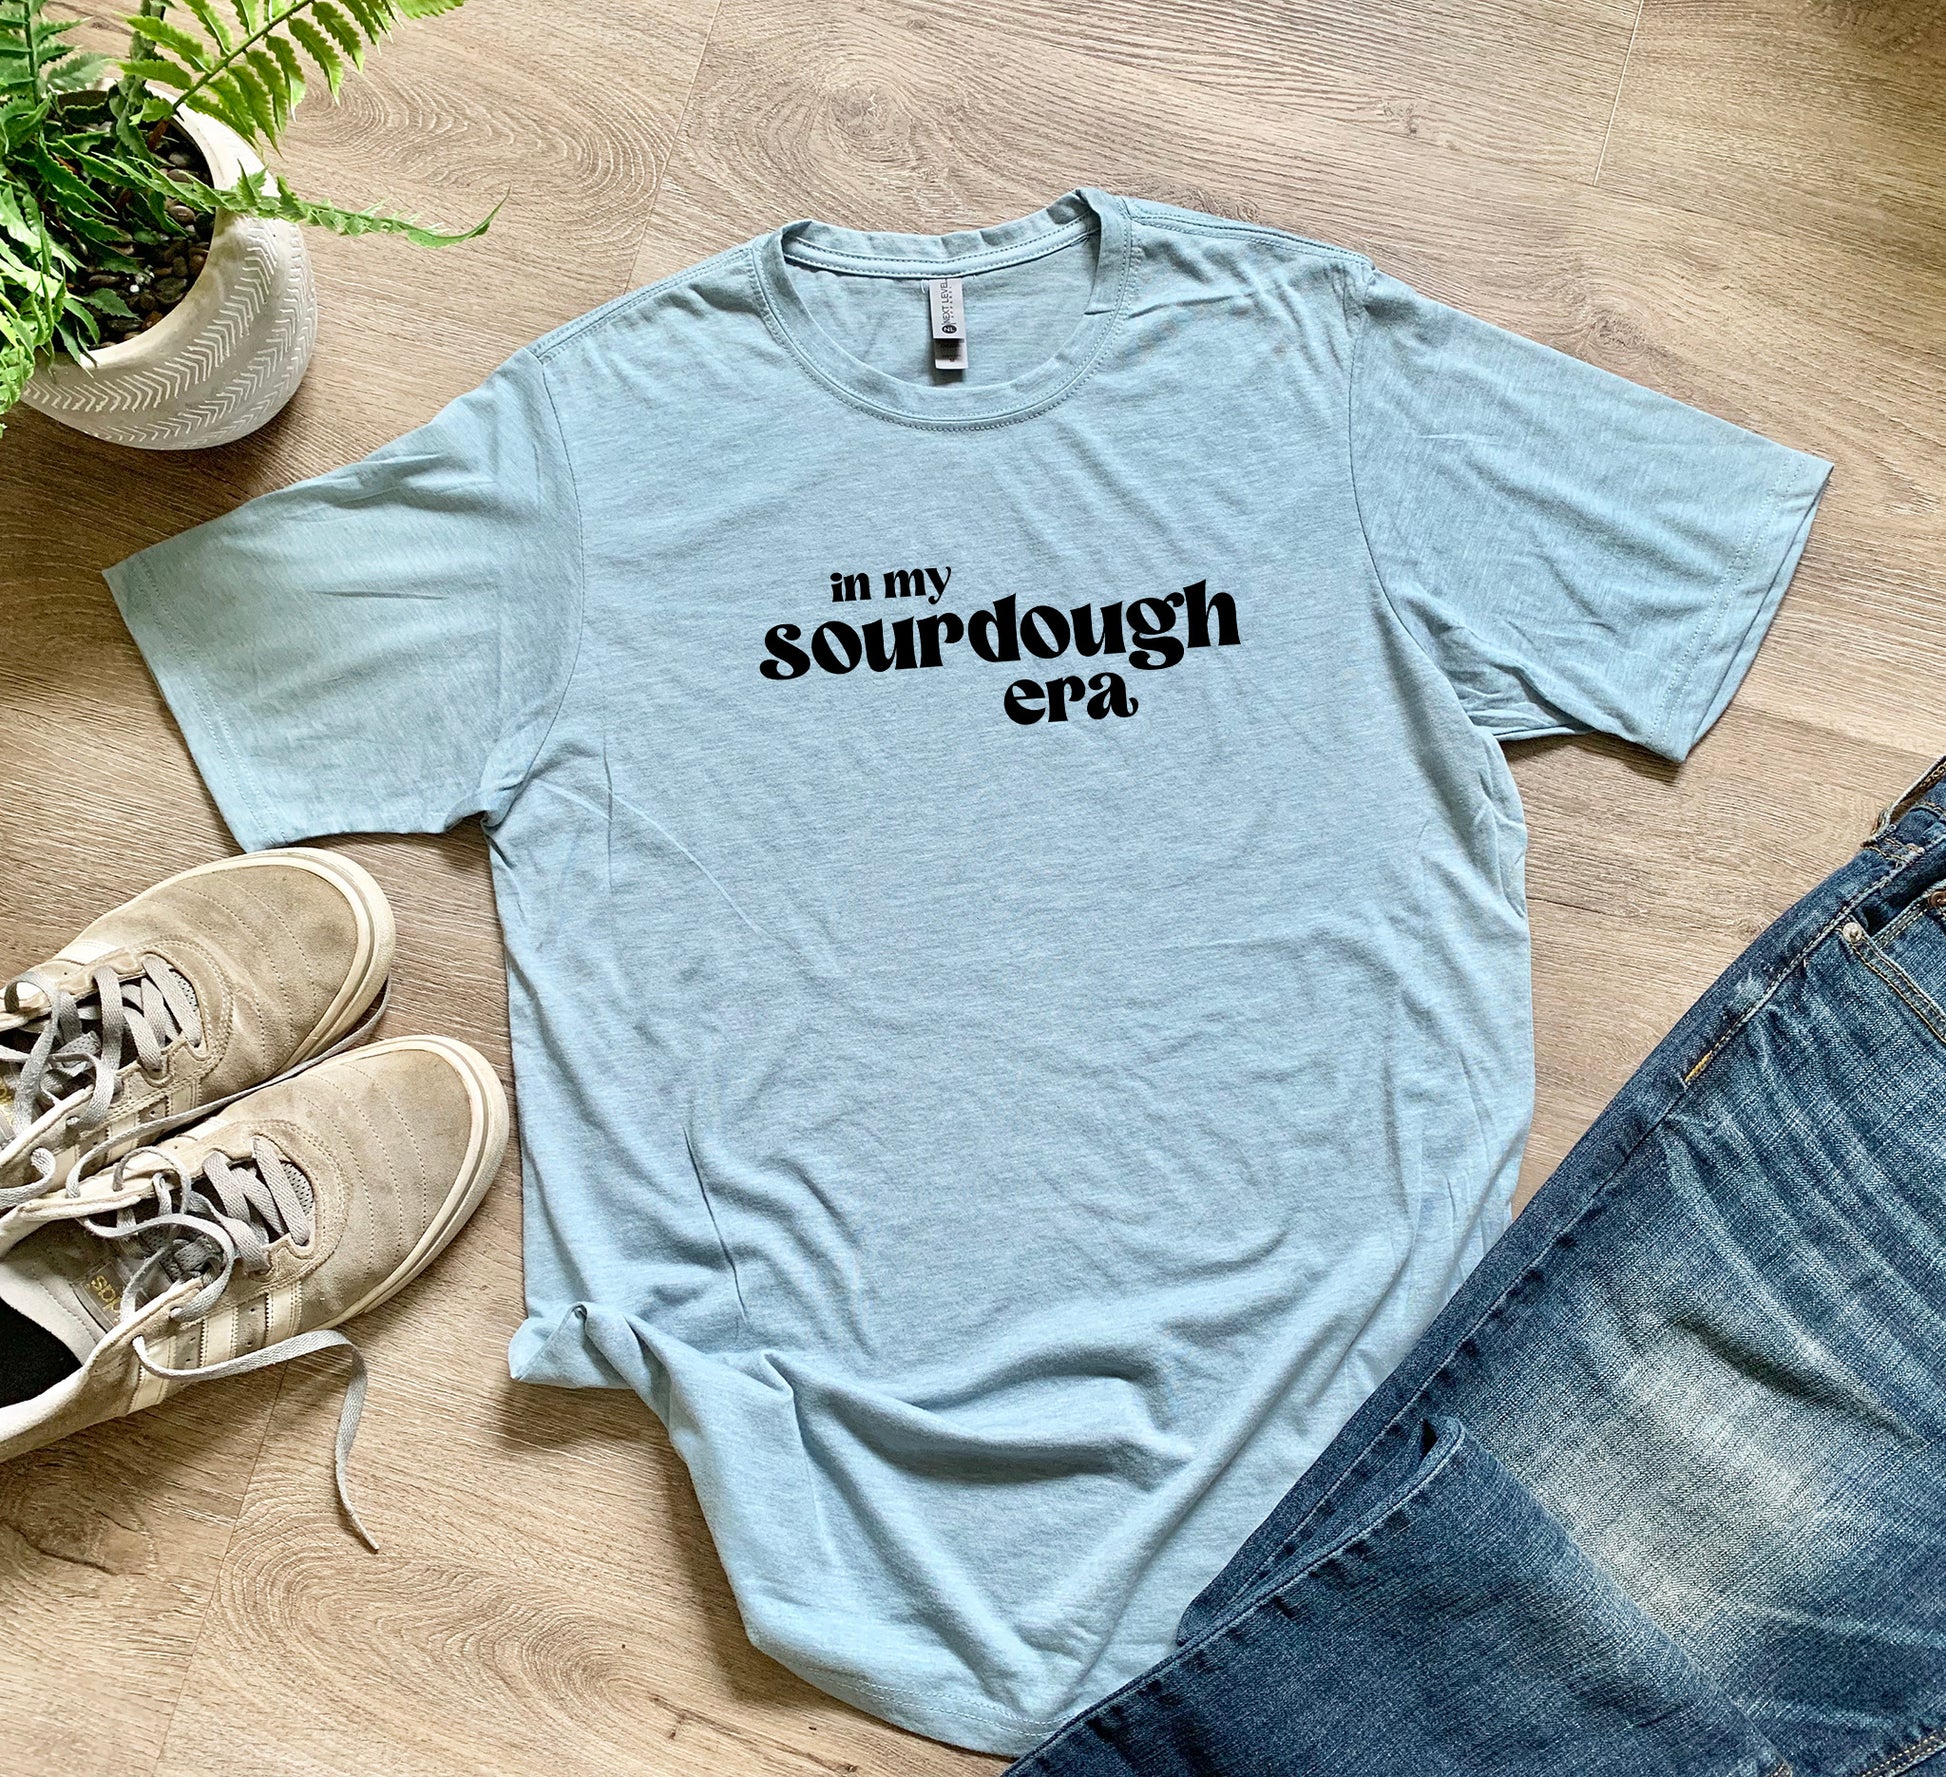 a t - shirt that says, do my sourdough crap